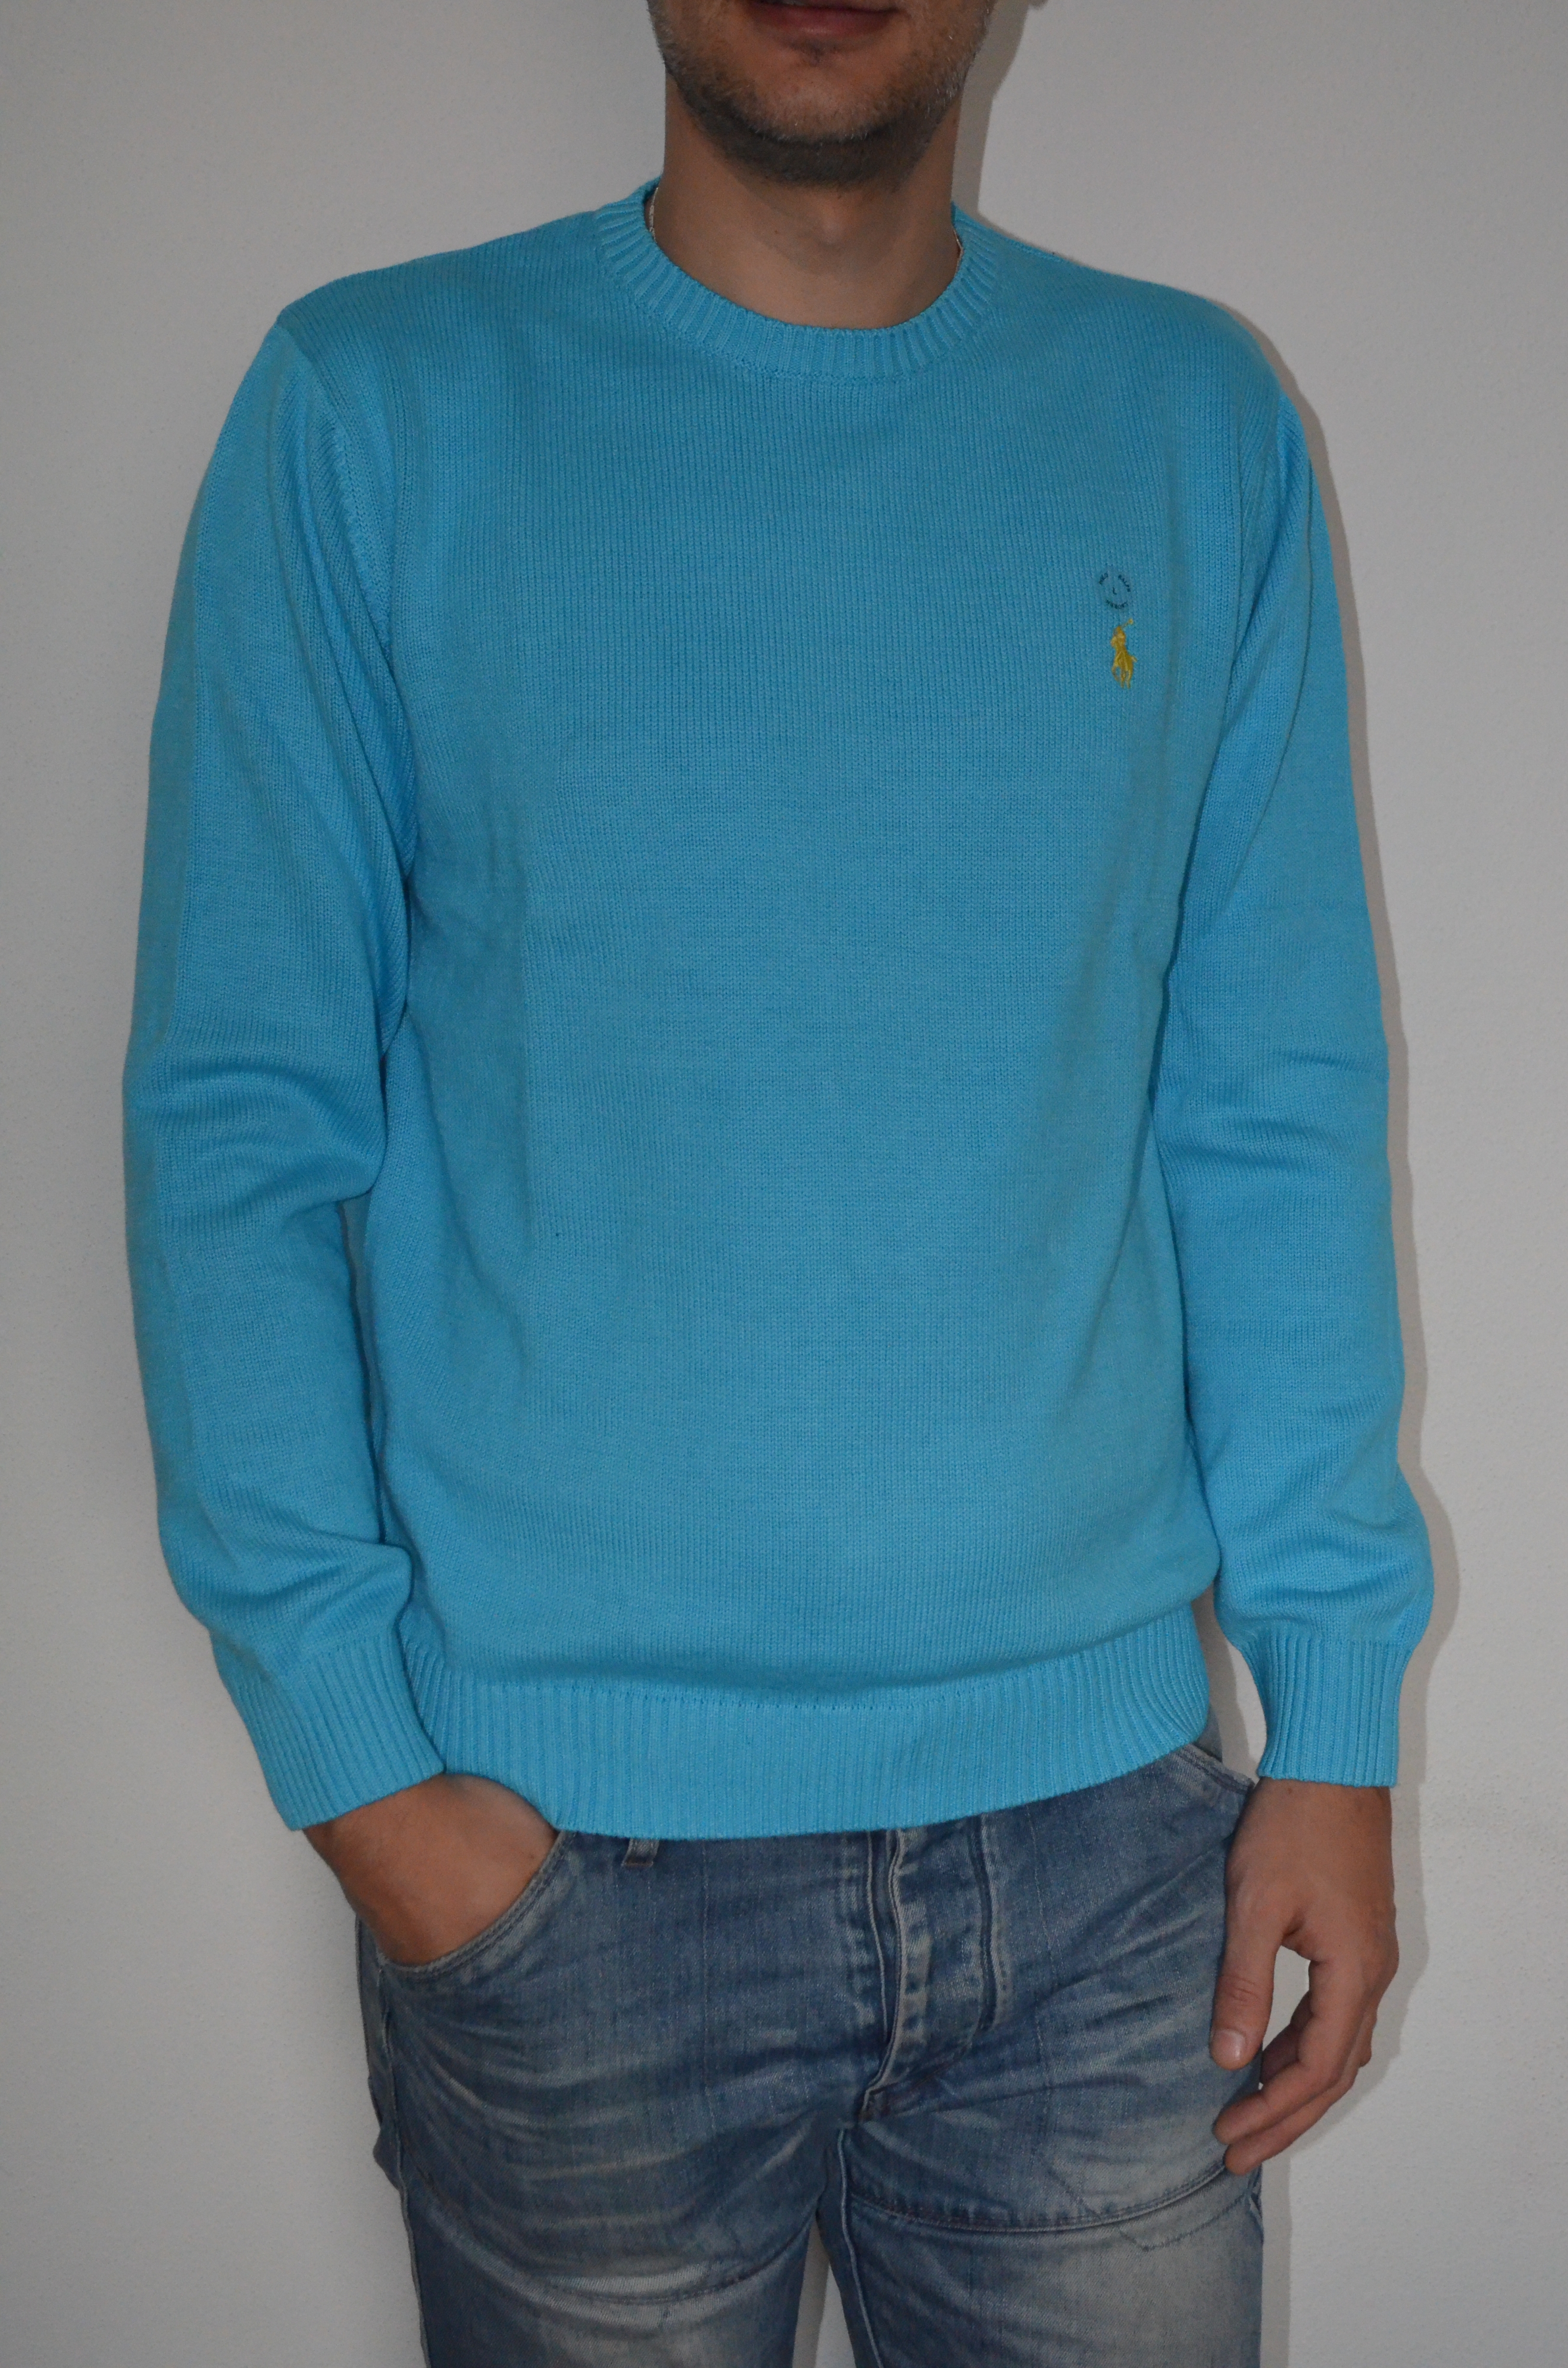 Ralph Lauren pánský svetr sv.modrý velikost: M